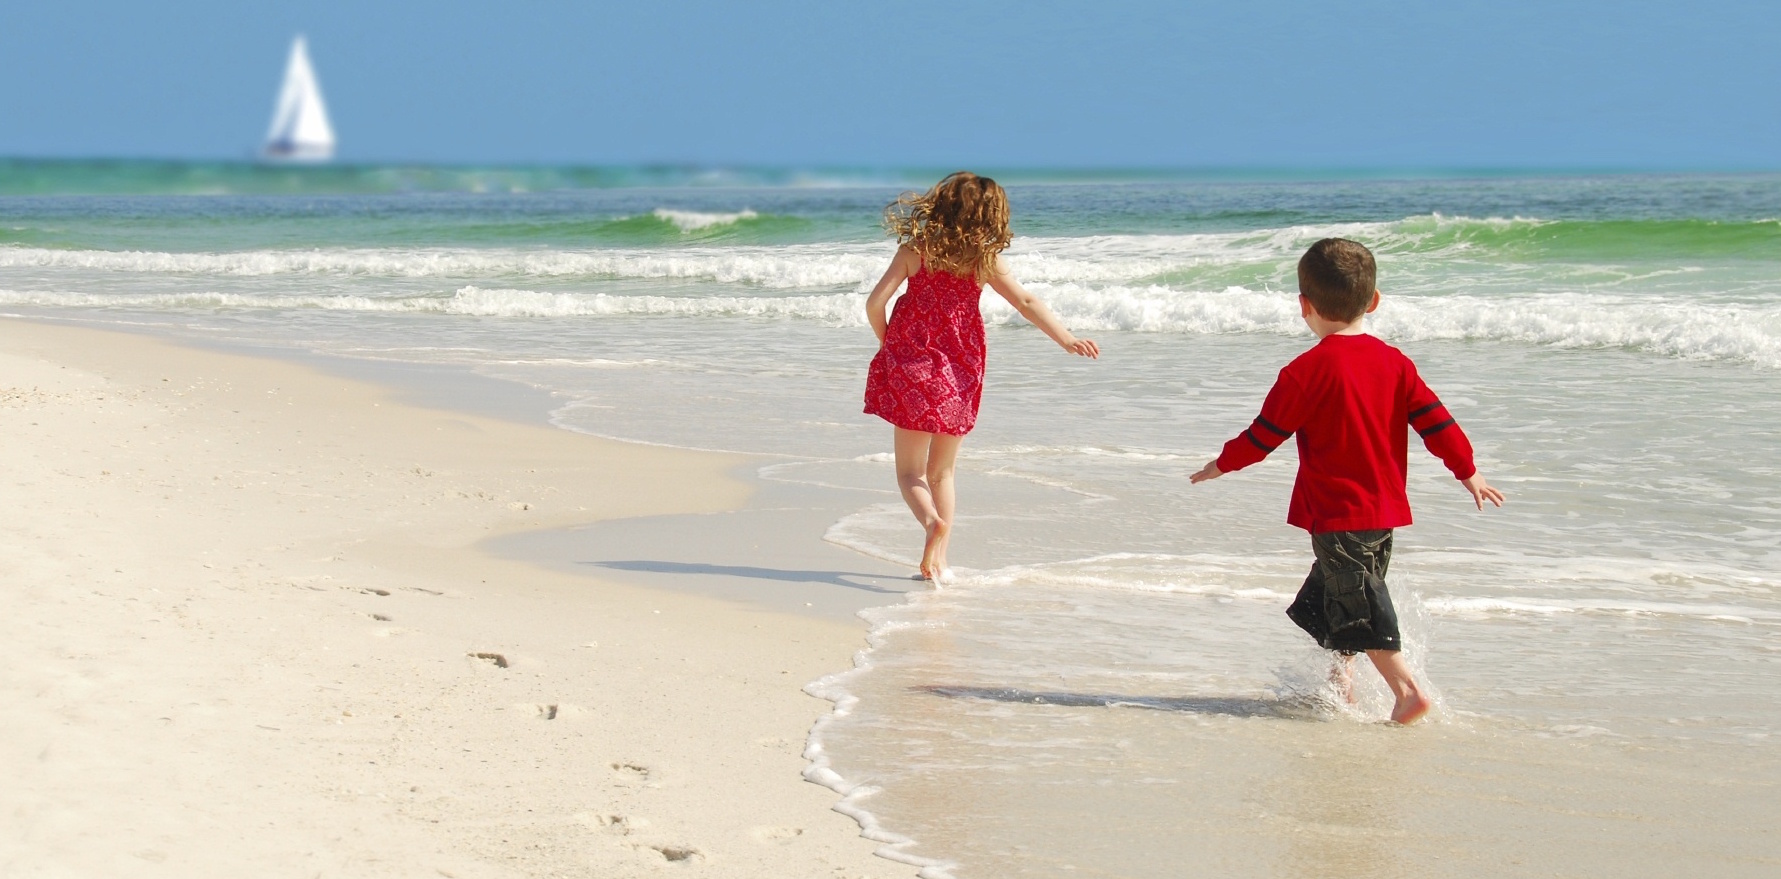 Children in Turkey on beach